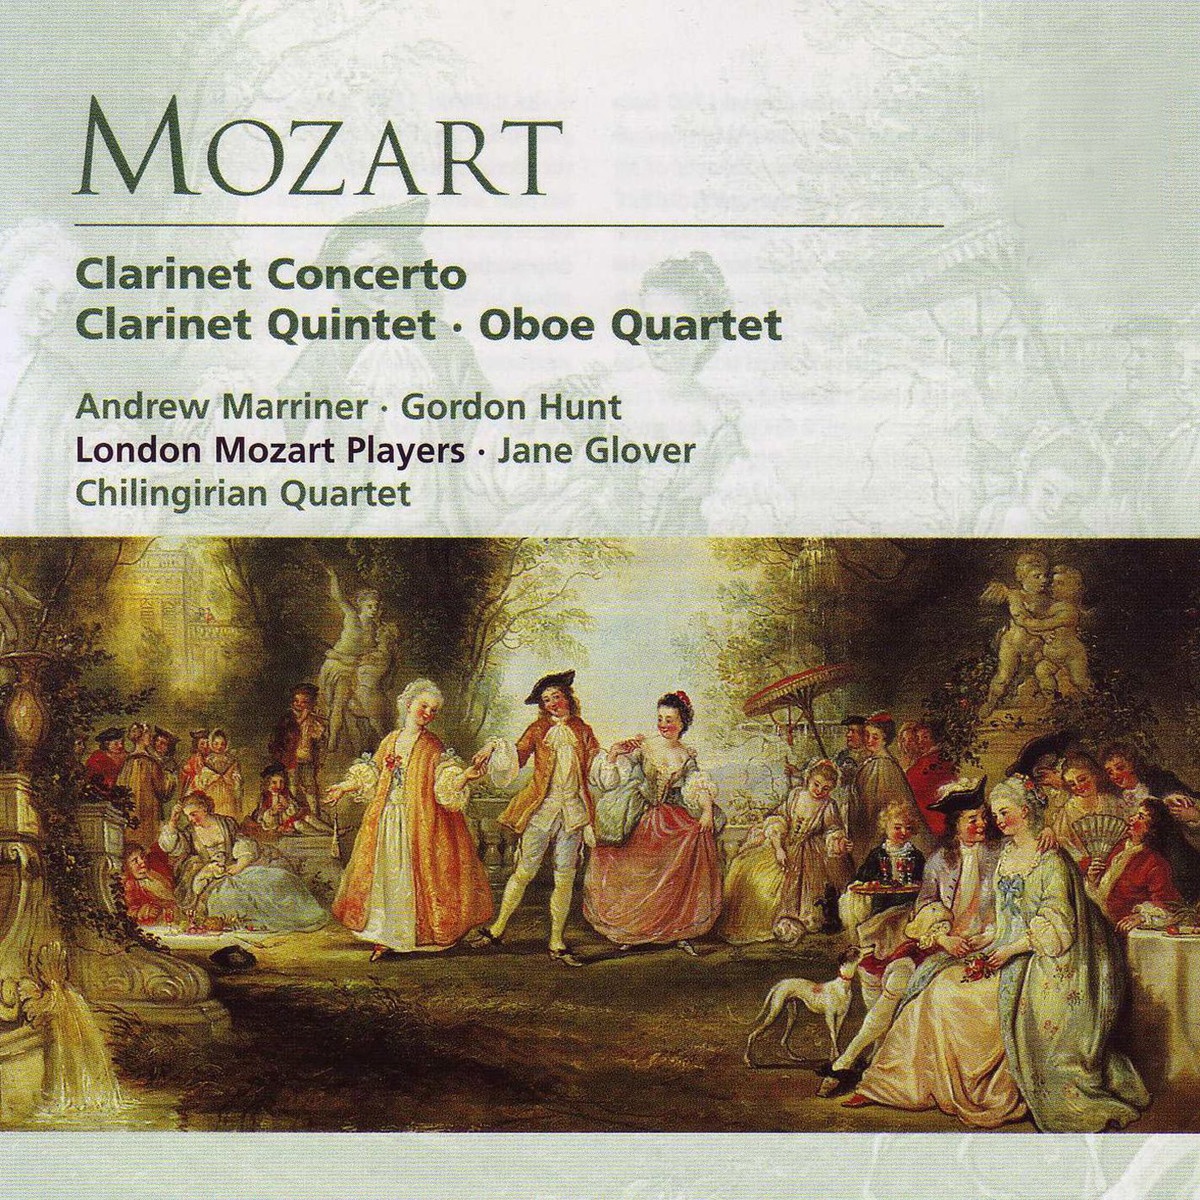 Mozart Clarinet Concerto & Quintet, Oboe Quartet